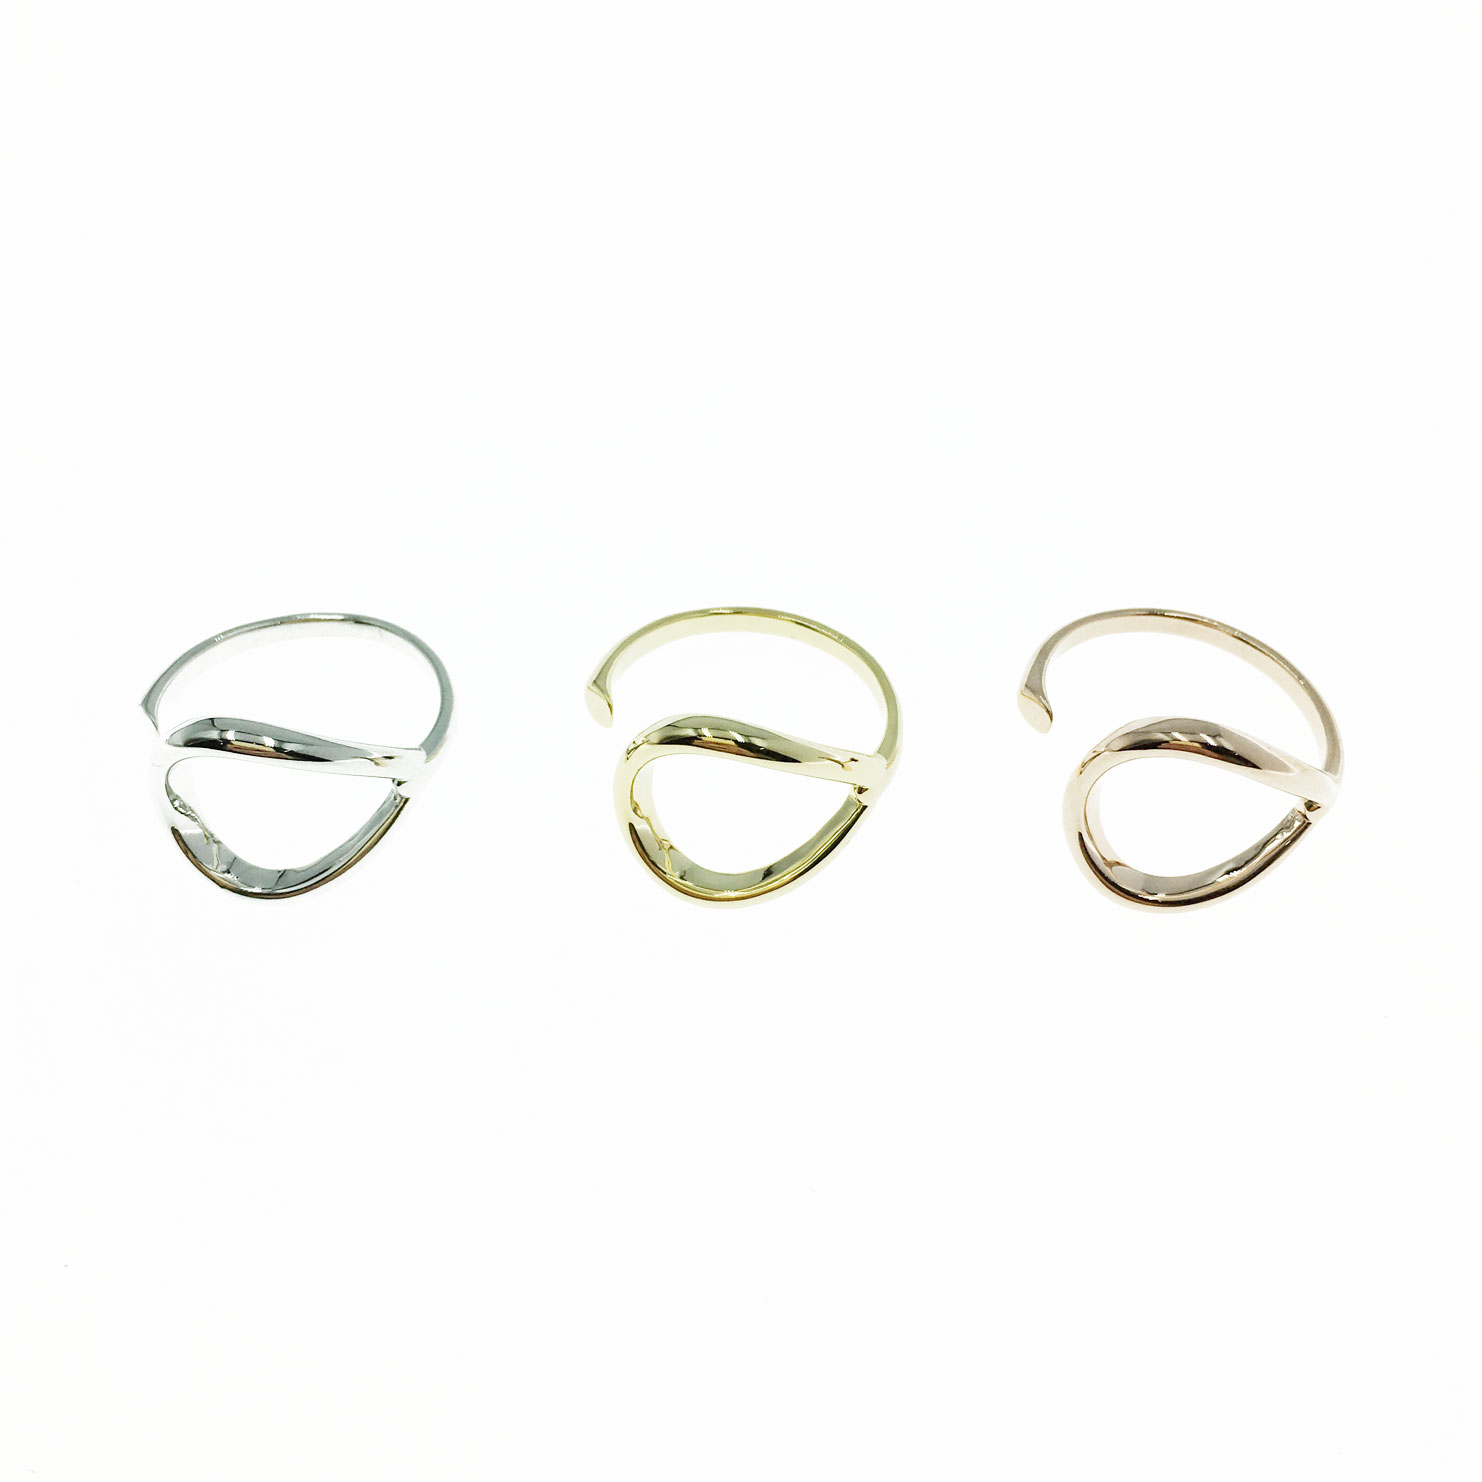 韓國 金屬 簡約 三色 明星款飾品 可調式 戒指